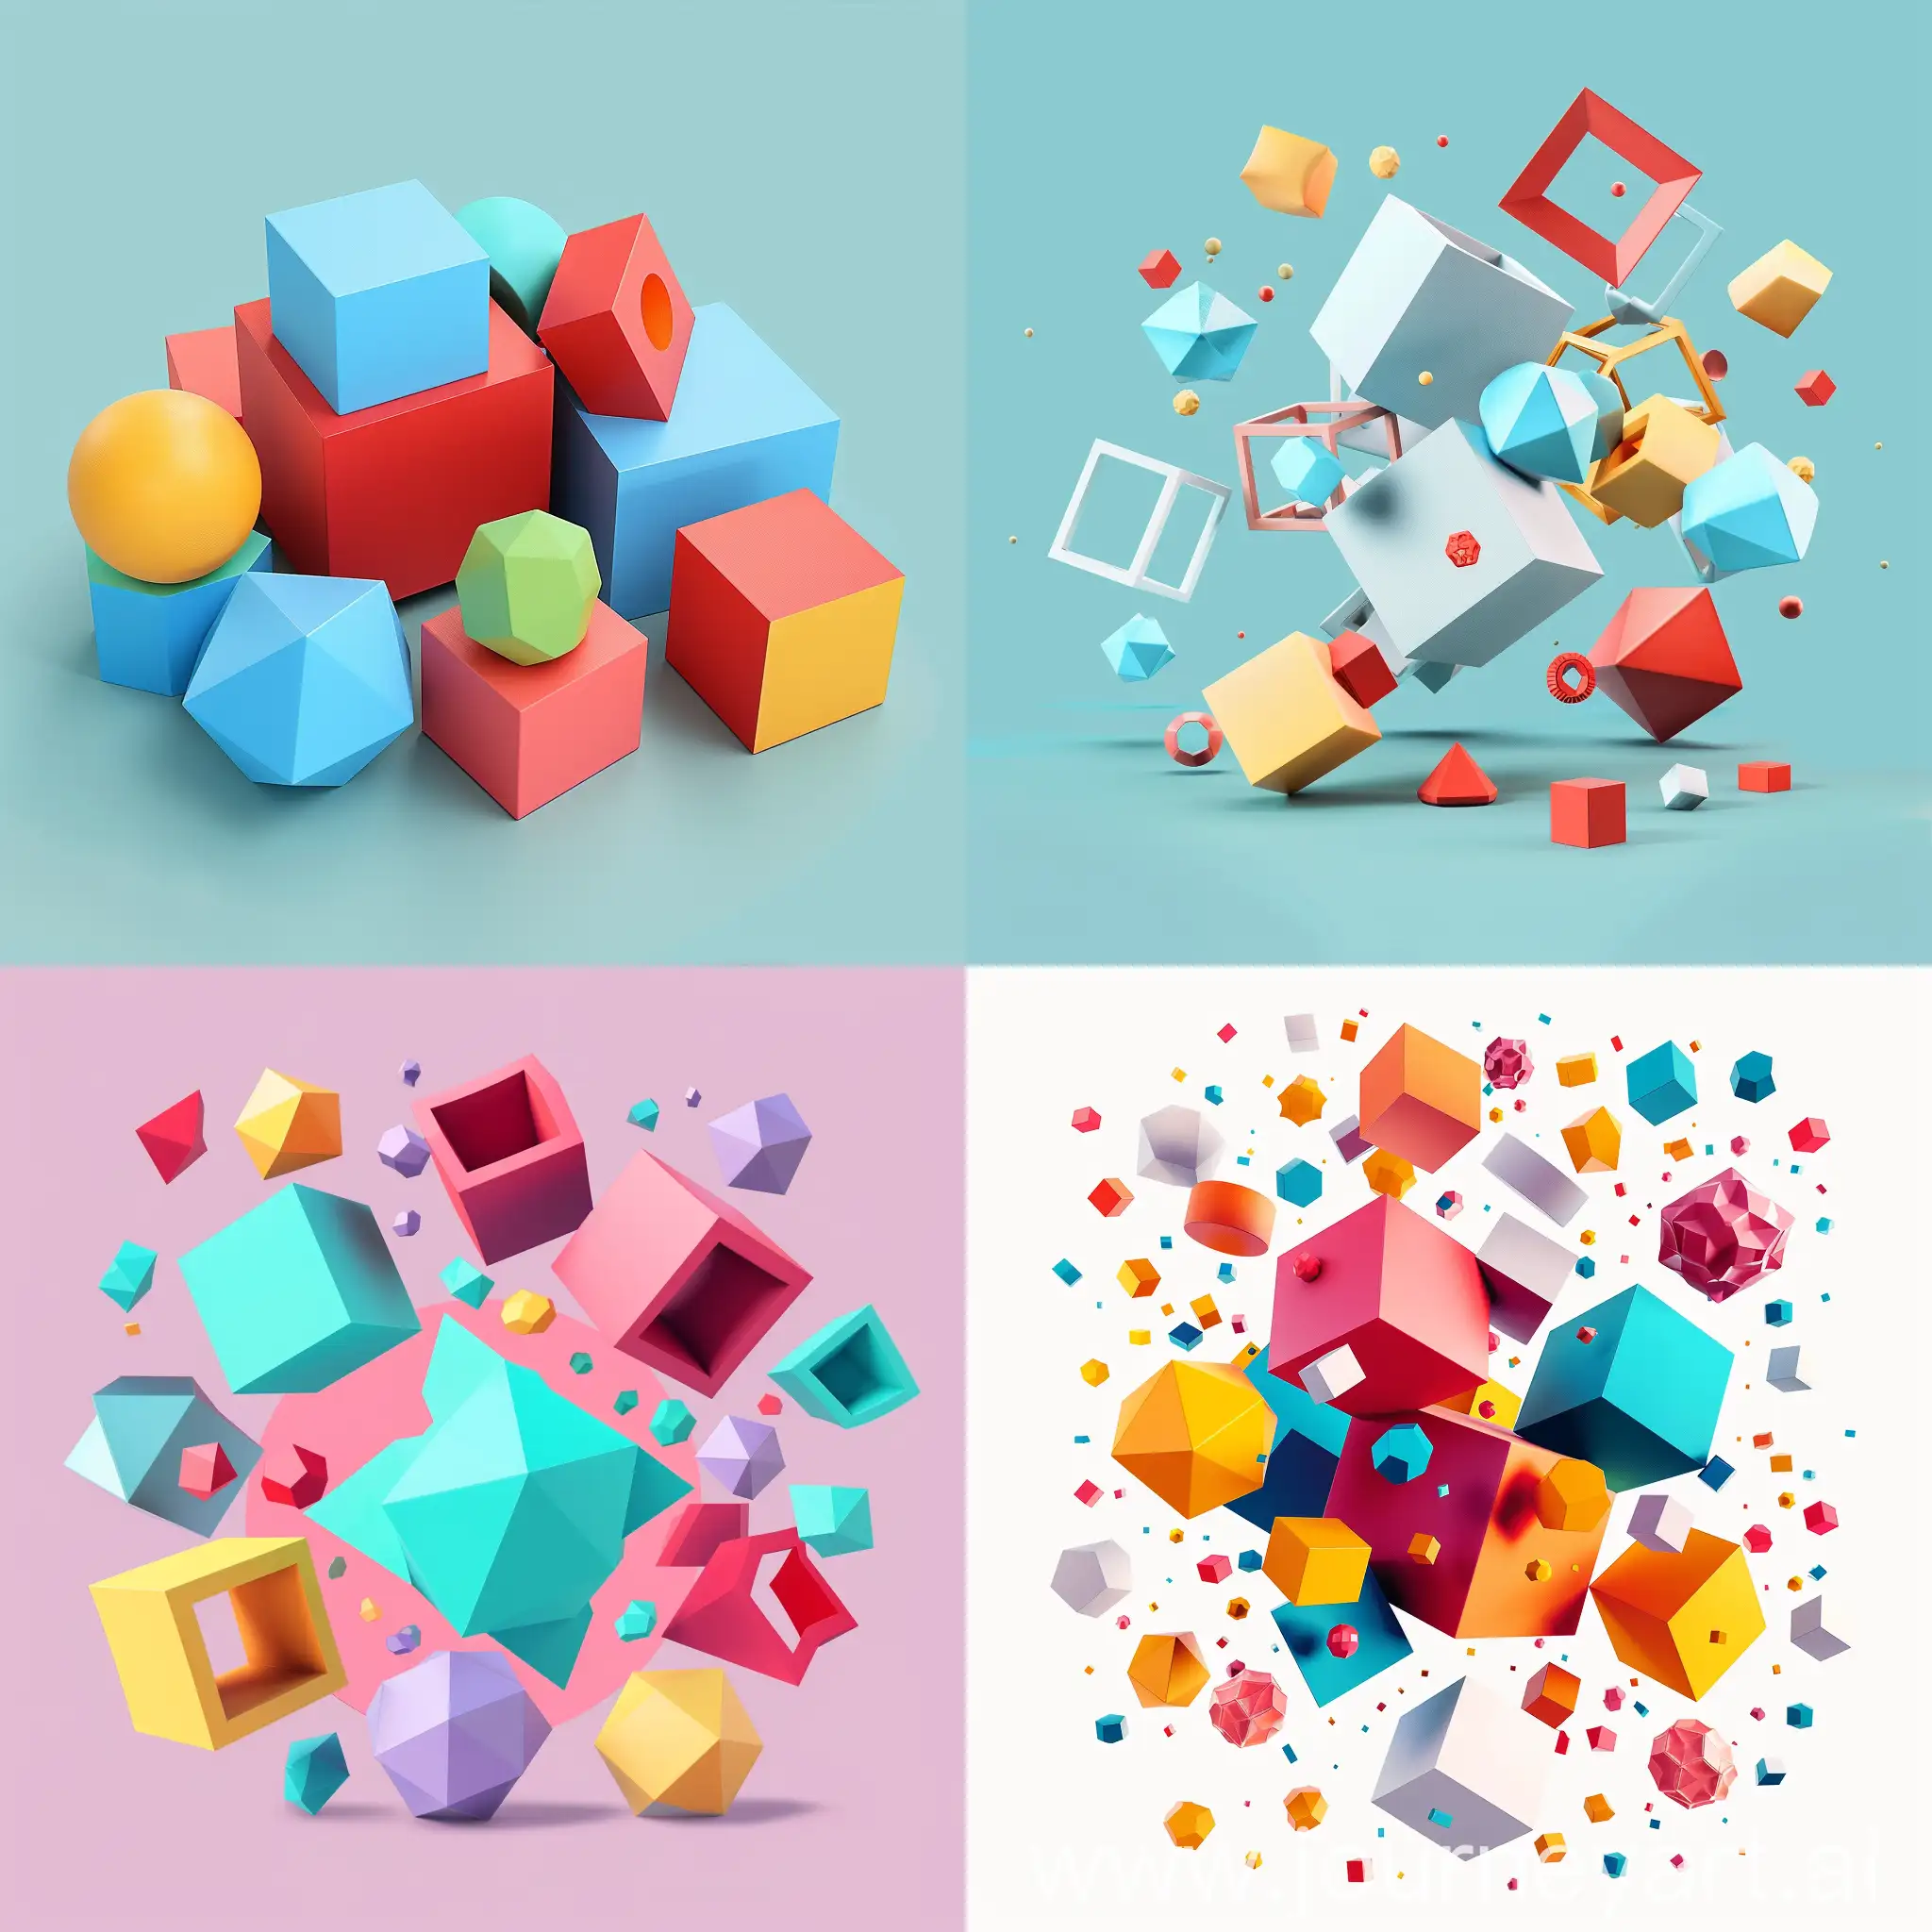 абстрактные геометрические фигуры 3д для детей в виде кубов, ромбов, октаэдров